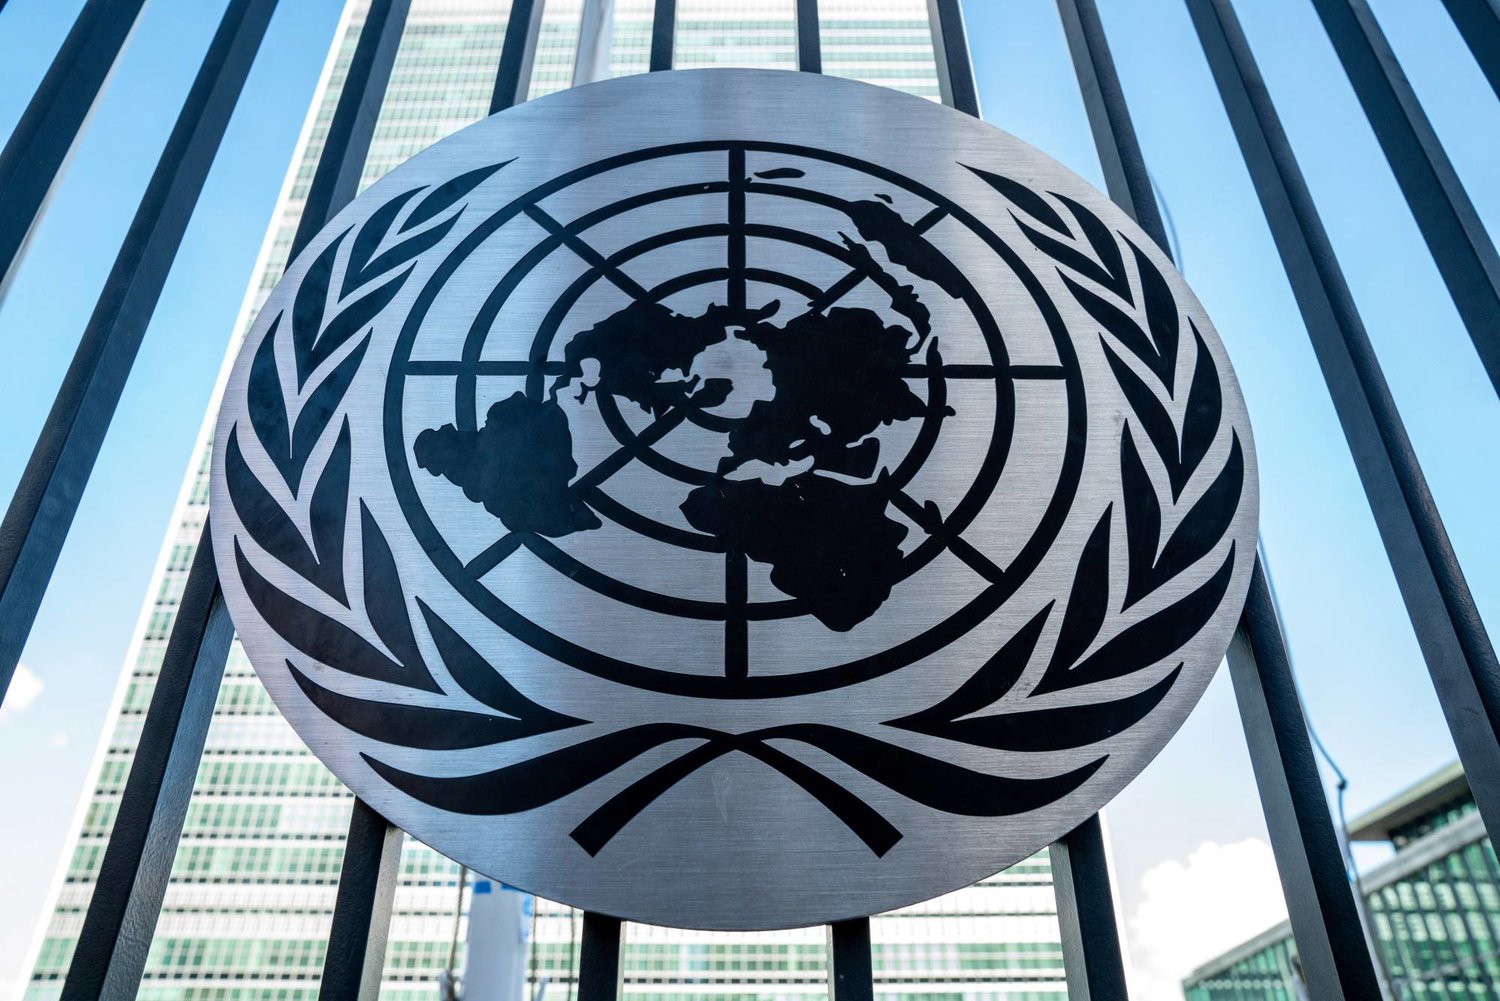 الأمم المتحدة تَعد بمزيد من الشفافية حول المشاركين في مؤتمراتها للمناخ